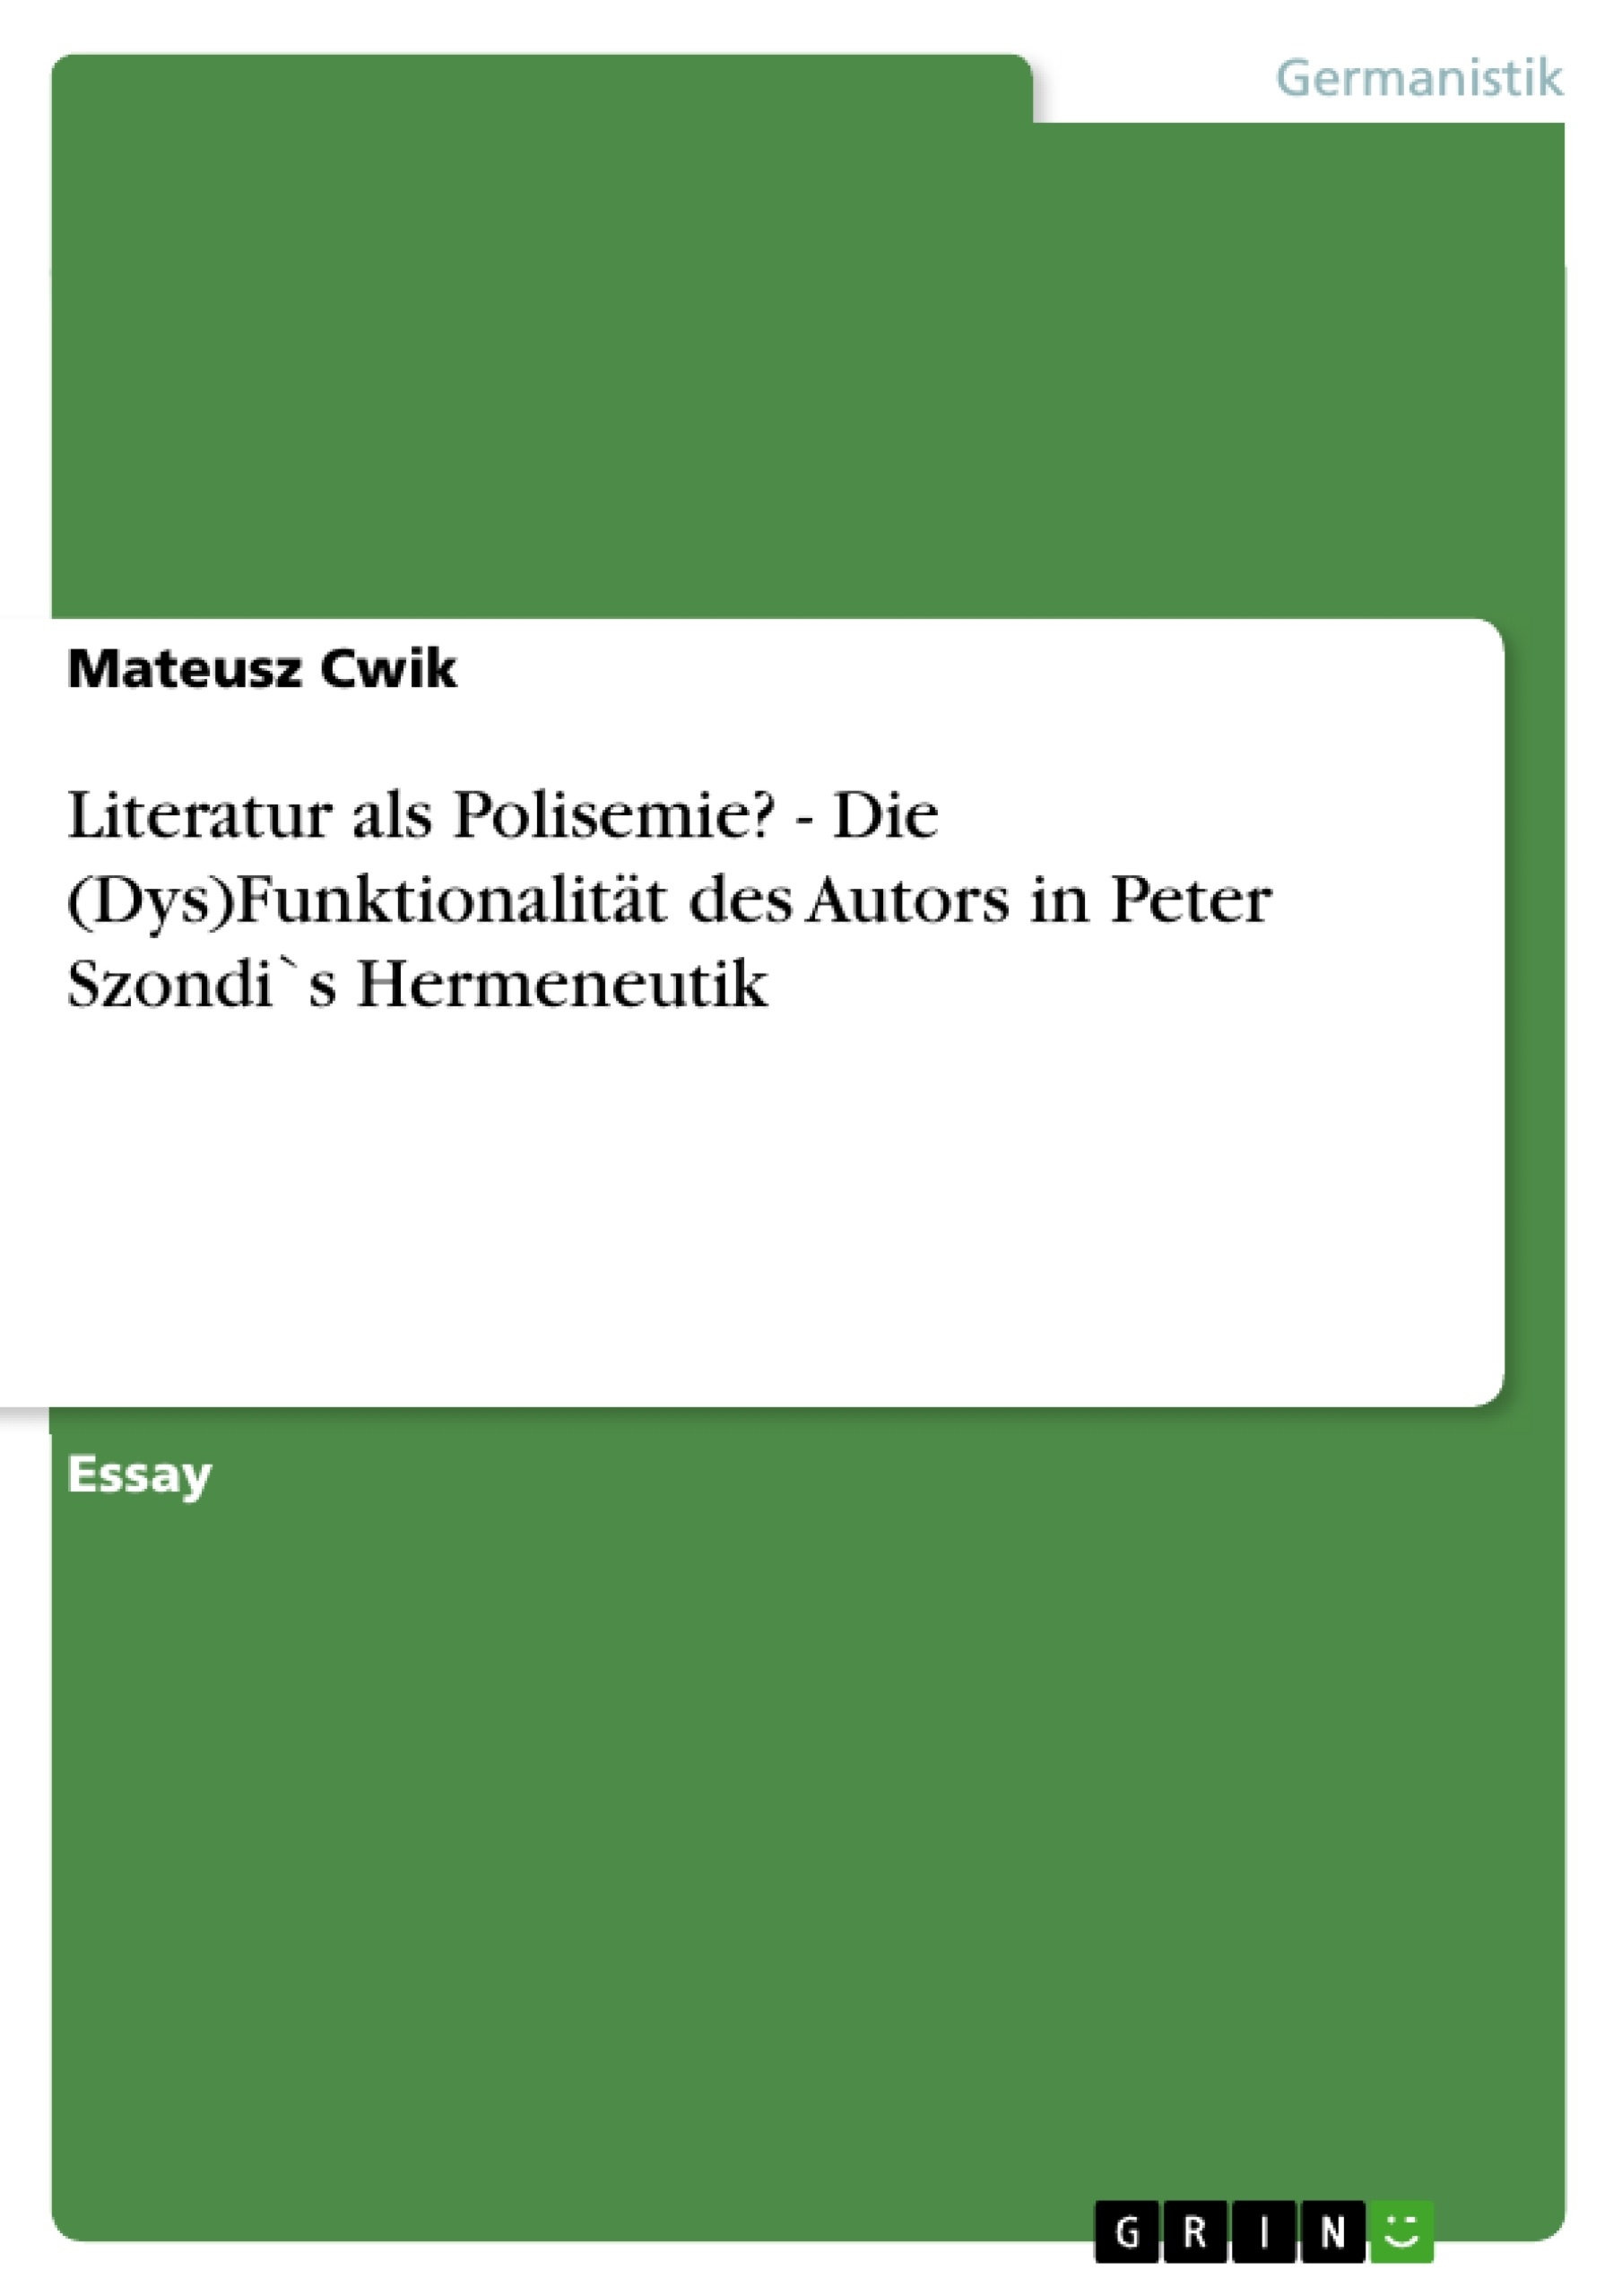 Título: Literatur als Polisemie? - Die (Dys)Funktionalität des Autors in Peter Szondi`s Hermeneutik